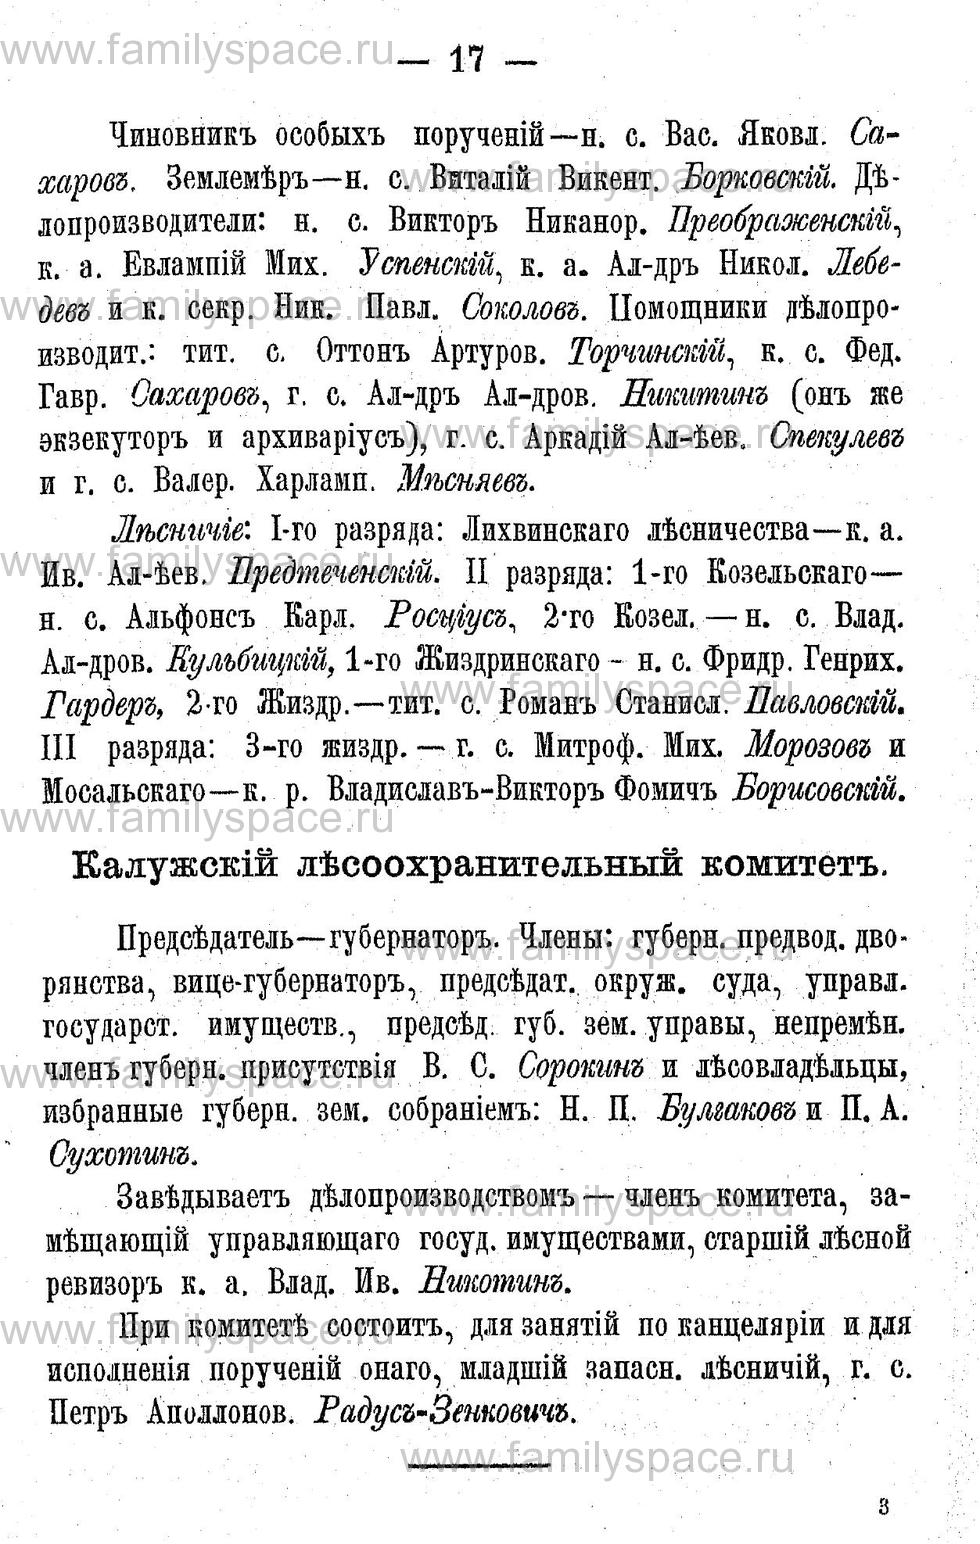 Поиск по фамилии - Адрес-календарь Калужской губернии на 1892 год, страница 2017